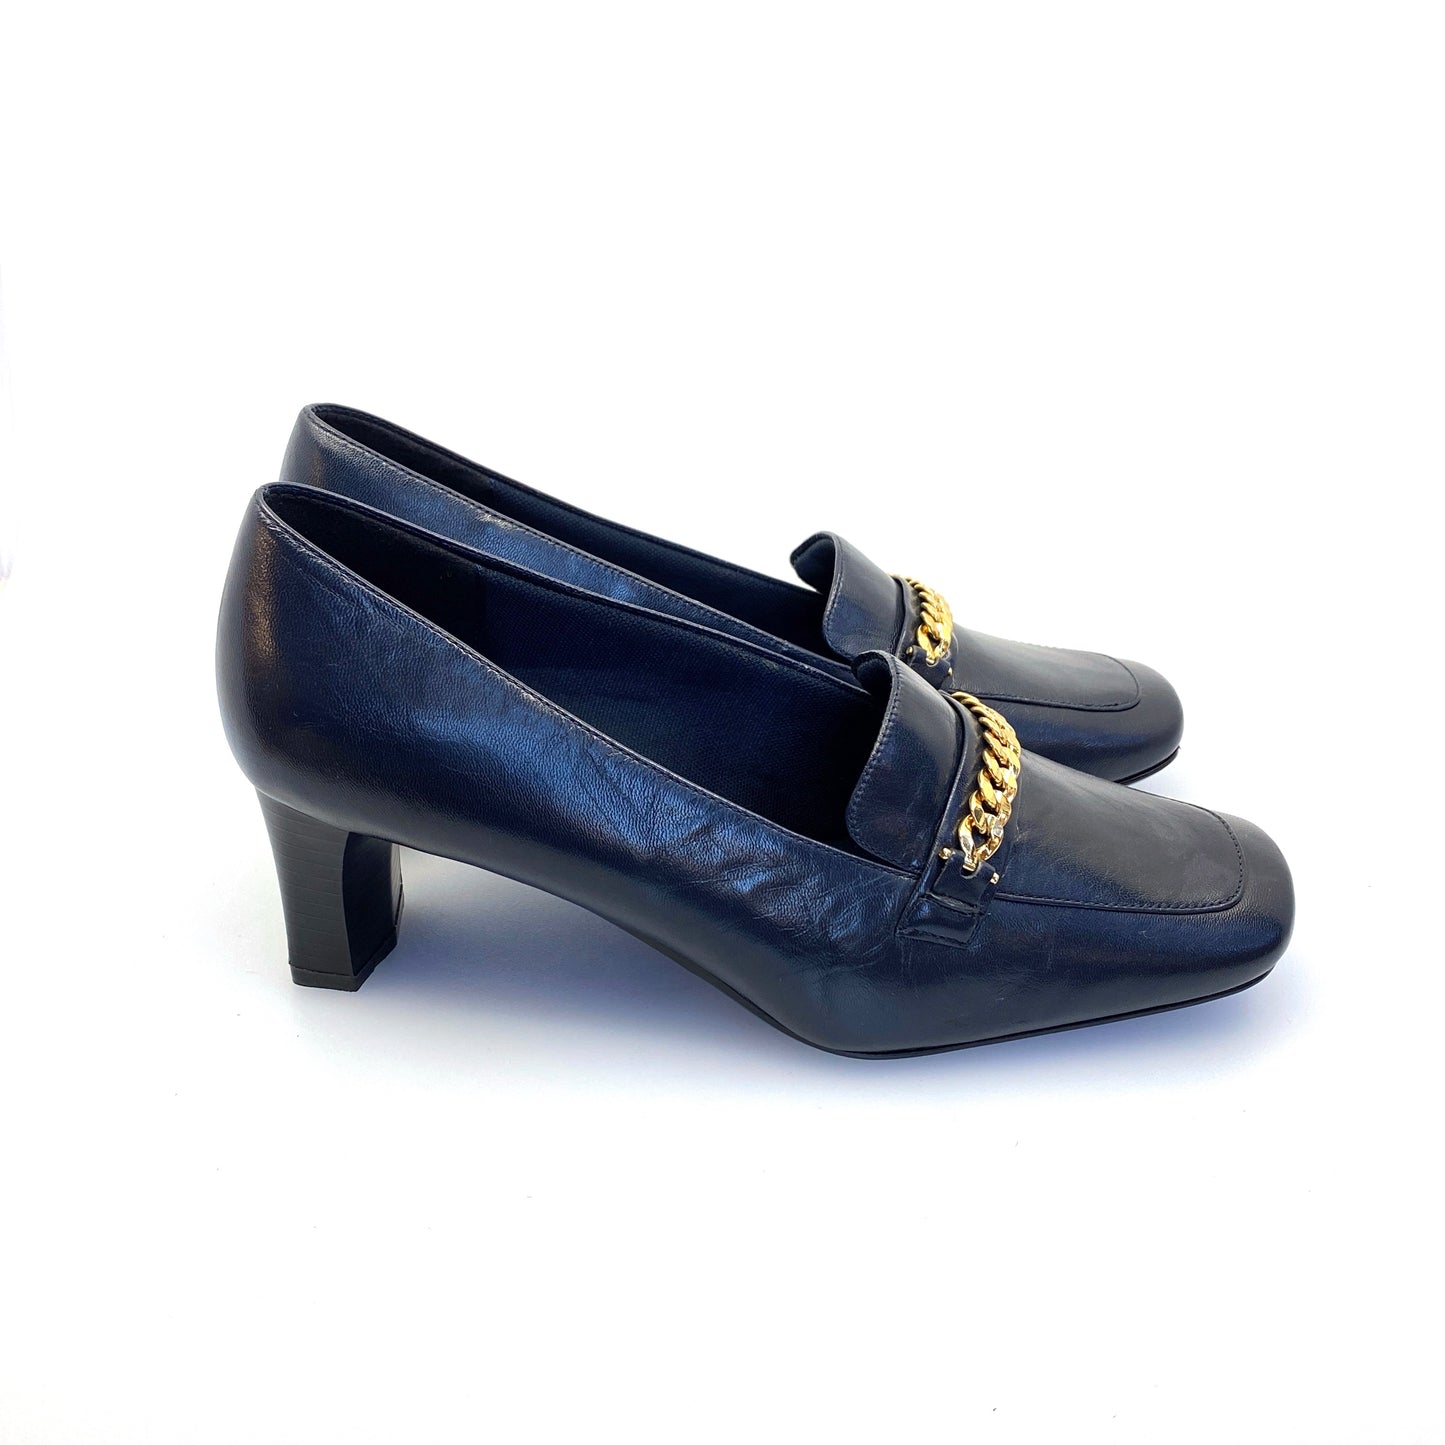 Stylish VILLAGER Liz Claiborne Womens Size 6W Blue Leather Heels Pumps Shoes